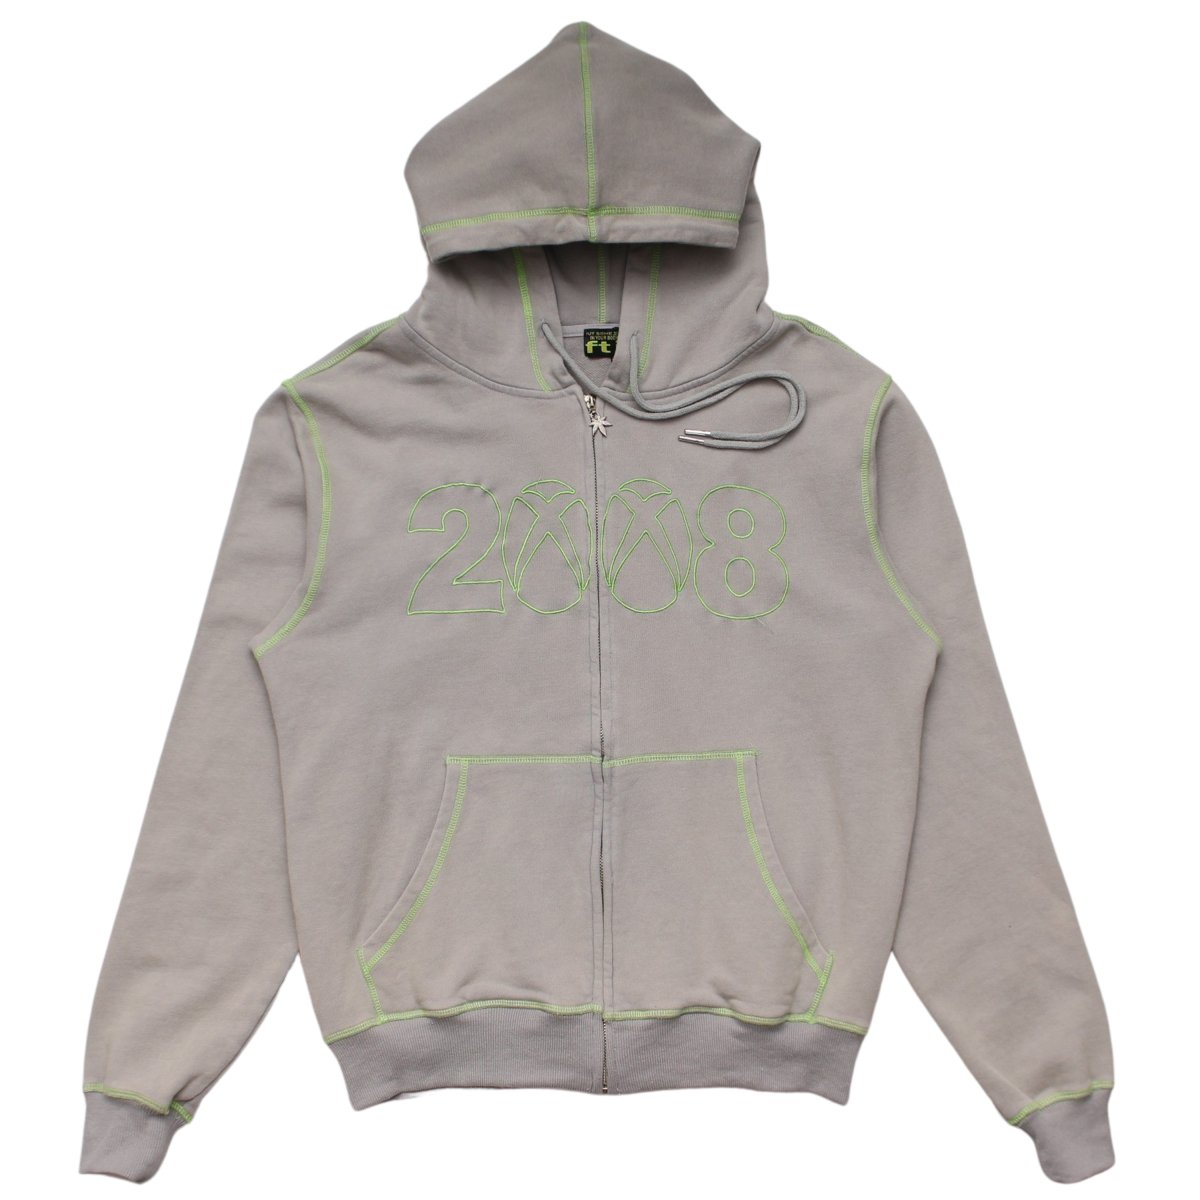 8box zip up hoodie【NEON】